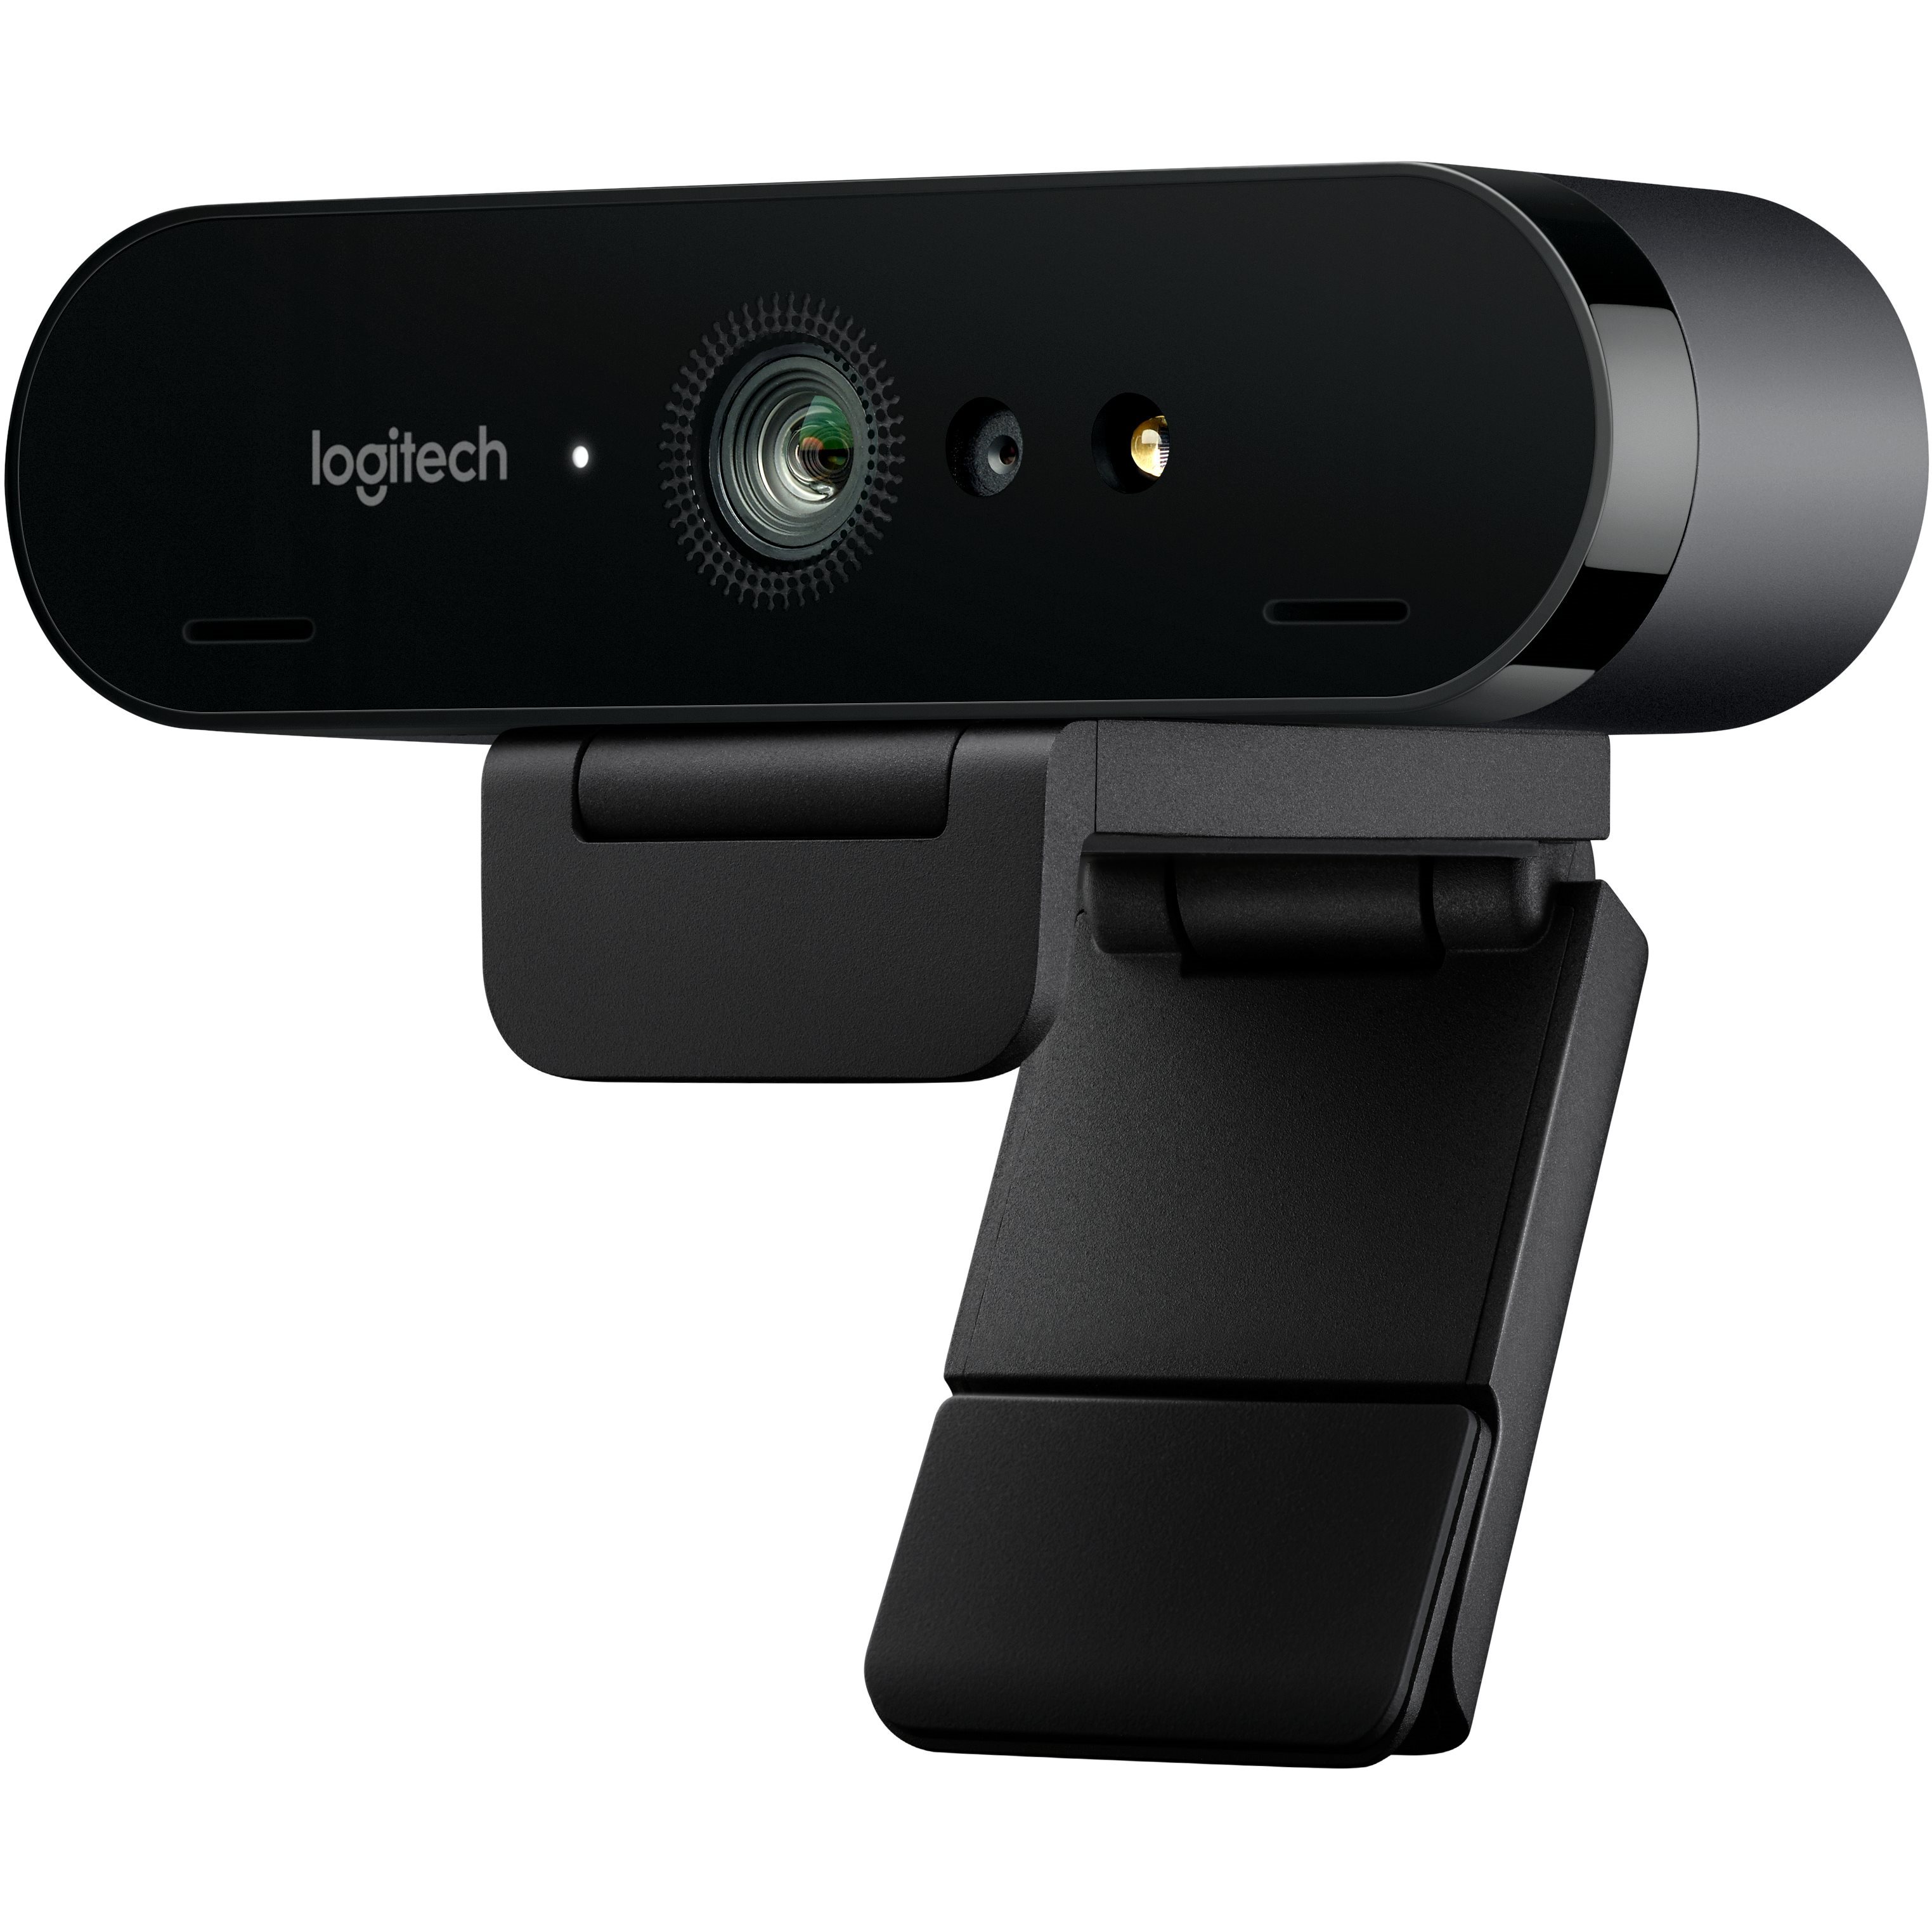   Webcams   Caméra Logitech Webcam Brio 960-001106